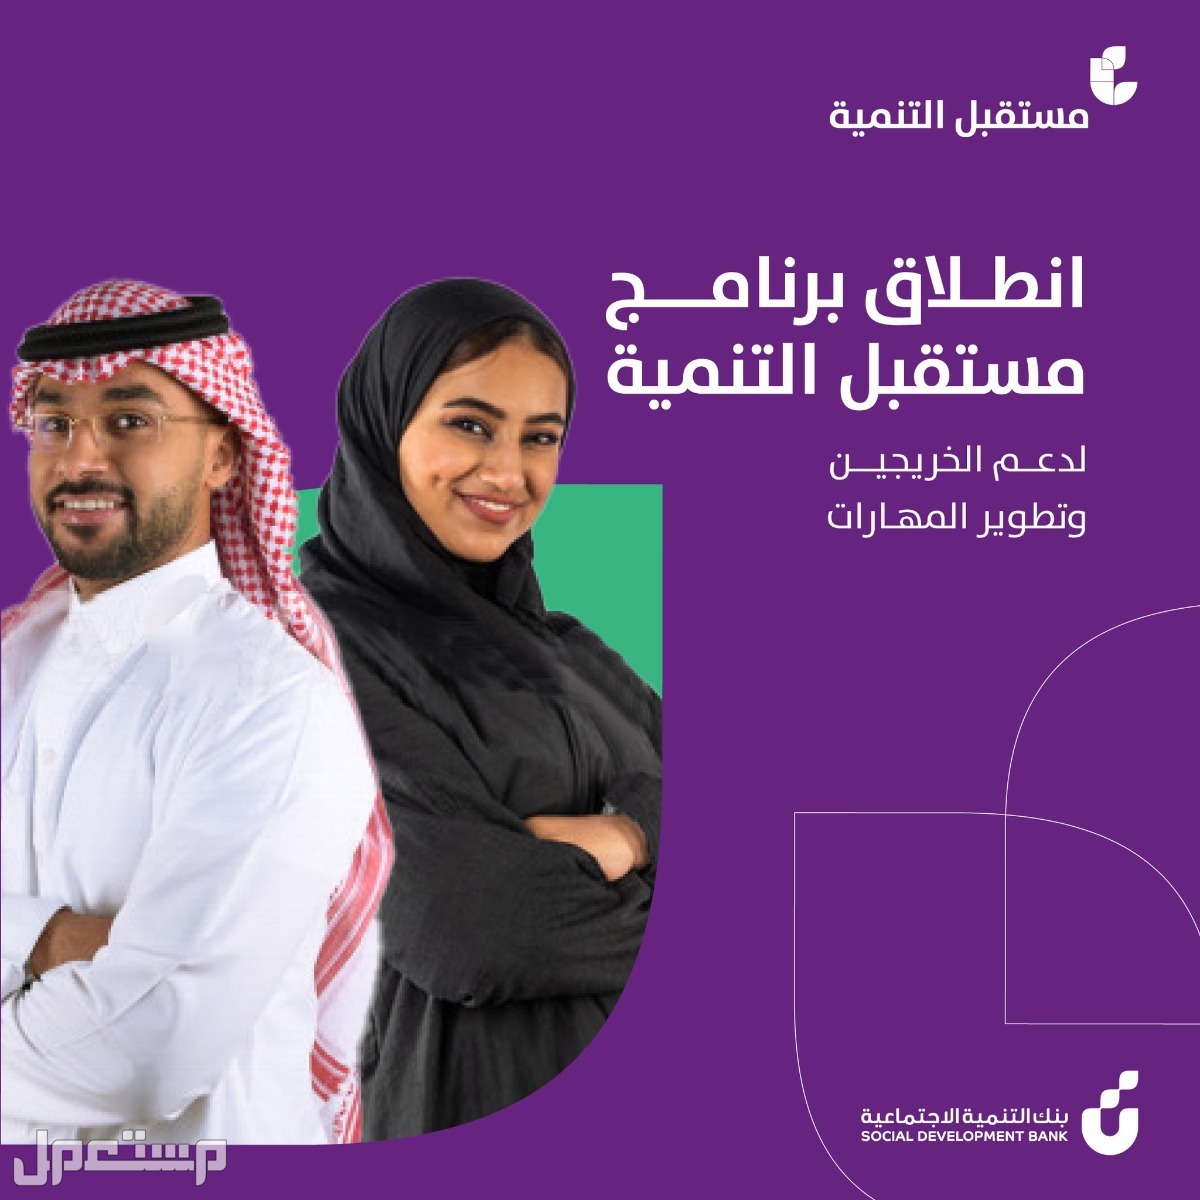 كيفية التقديم على برنامج مستقبل التنمية للخريجين في بنك التنمية الاجتماعية في قطر التقديم على برنامج مستقبل التنمية للخريجين